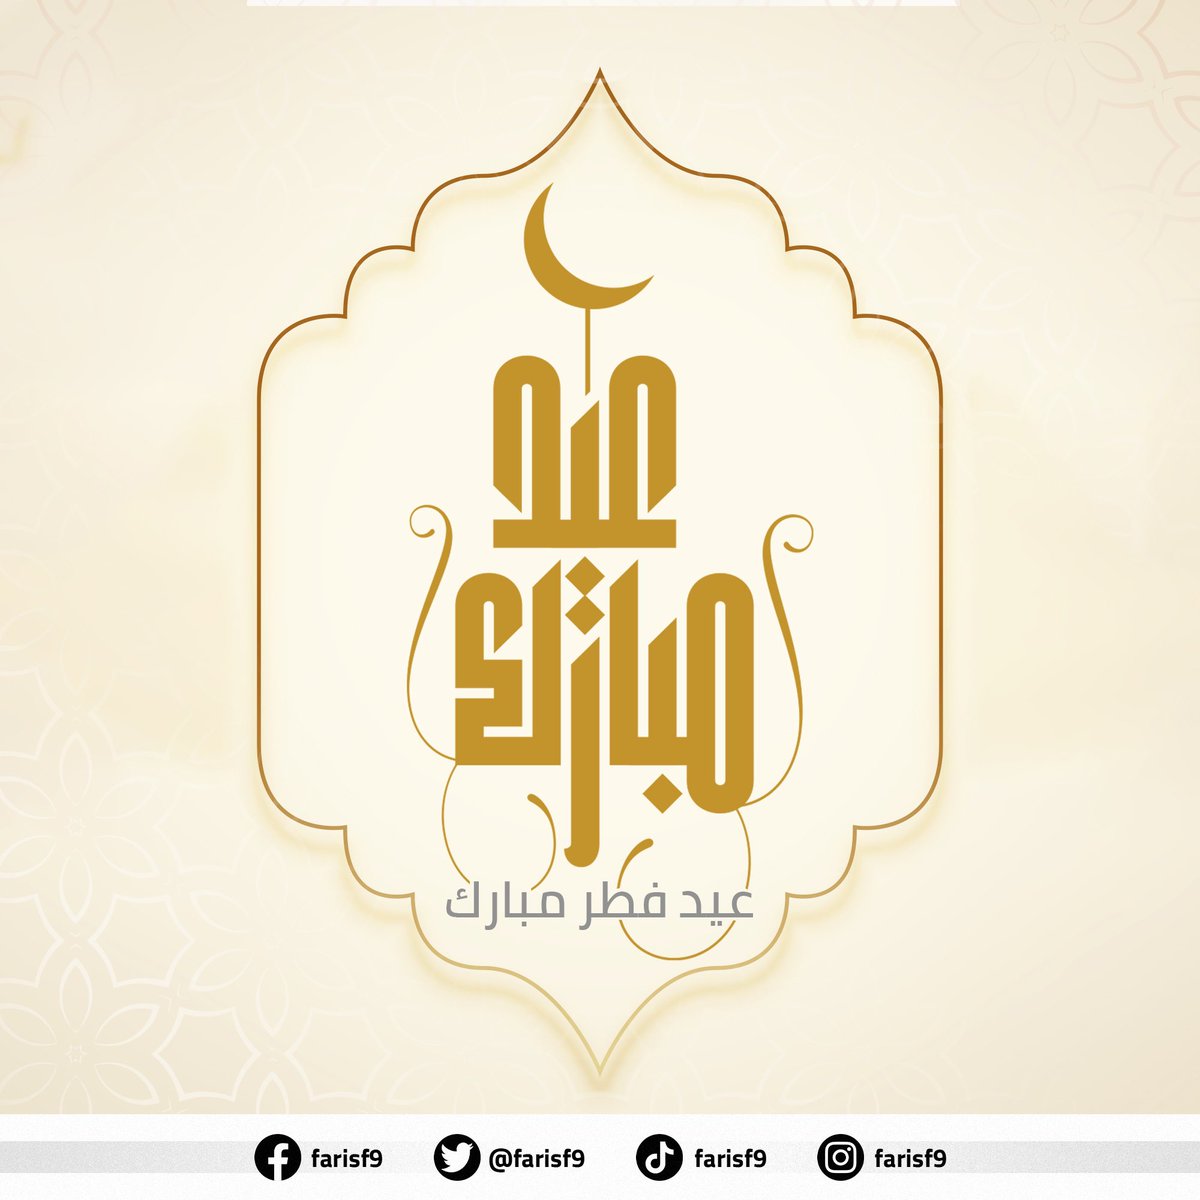 عيدكم مبارك، وعساكم من عواده، وكل عام والعيد بينكم ومعكم أجمل، وكل عام وأنتم ومن تحبون بألف خير 🤍